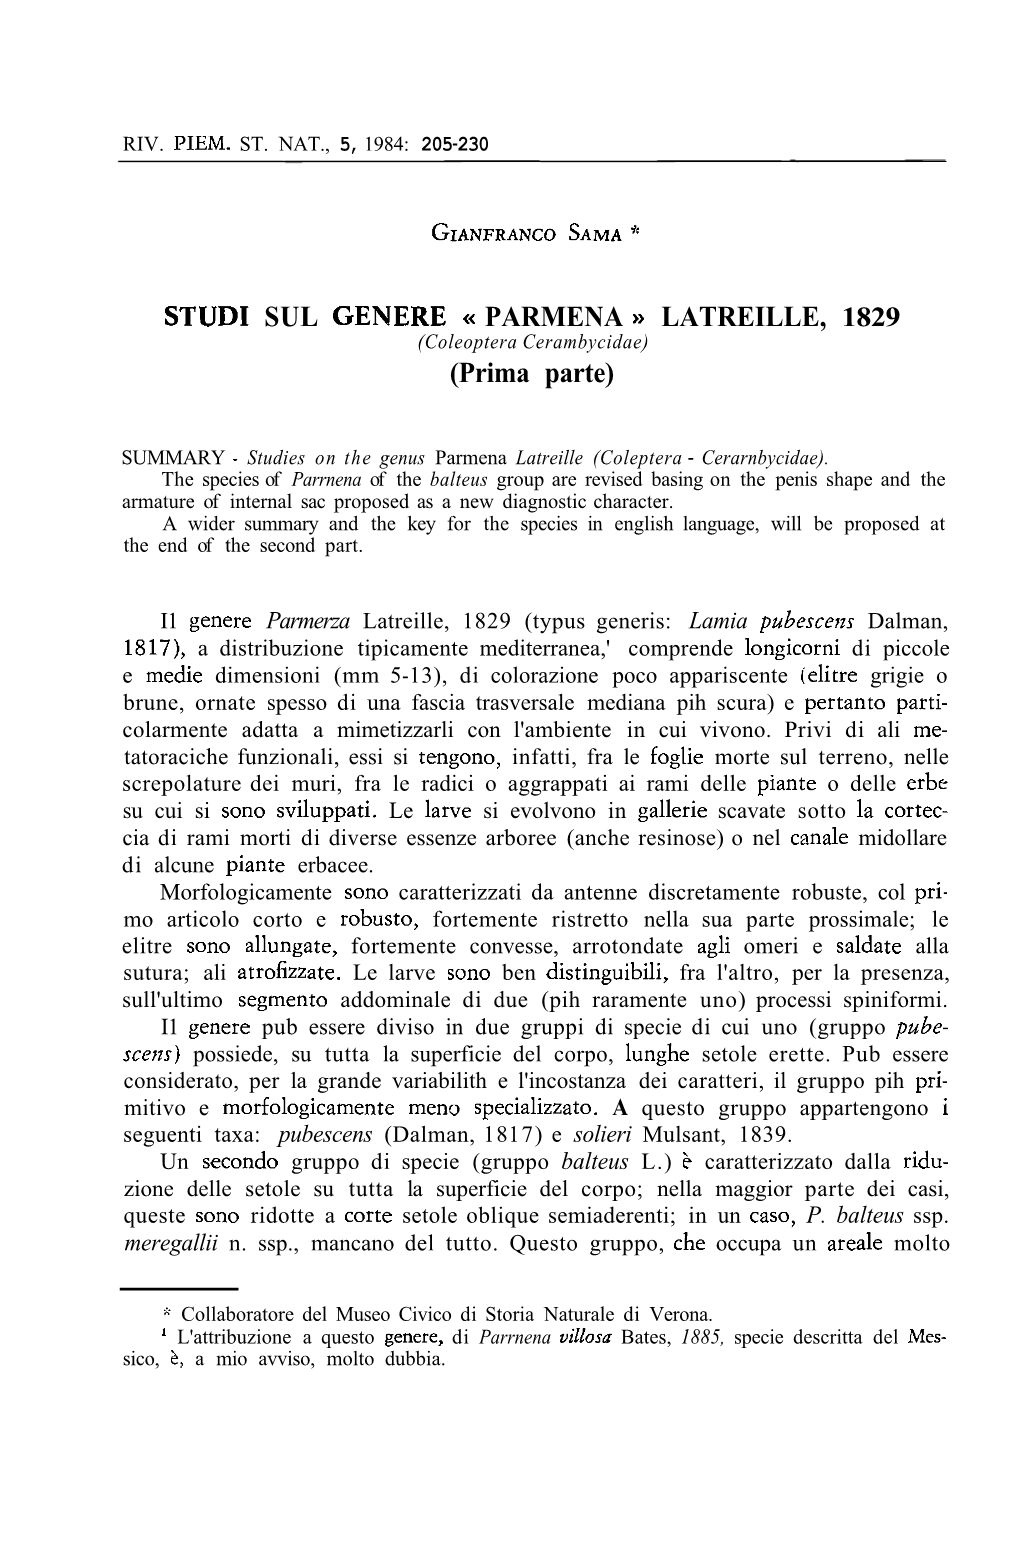 STUD1 SUL GENERE PARMENA LATREILLE, 1829 (Prima Parte)